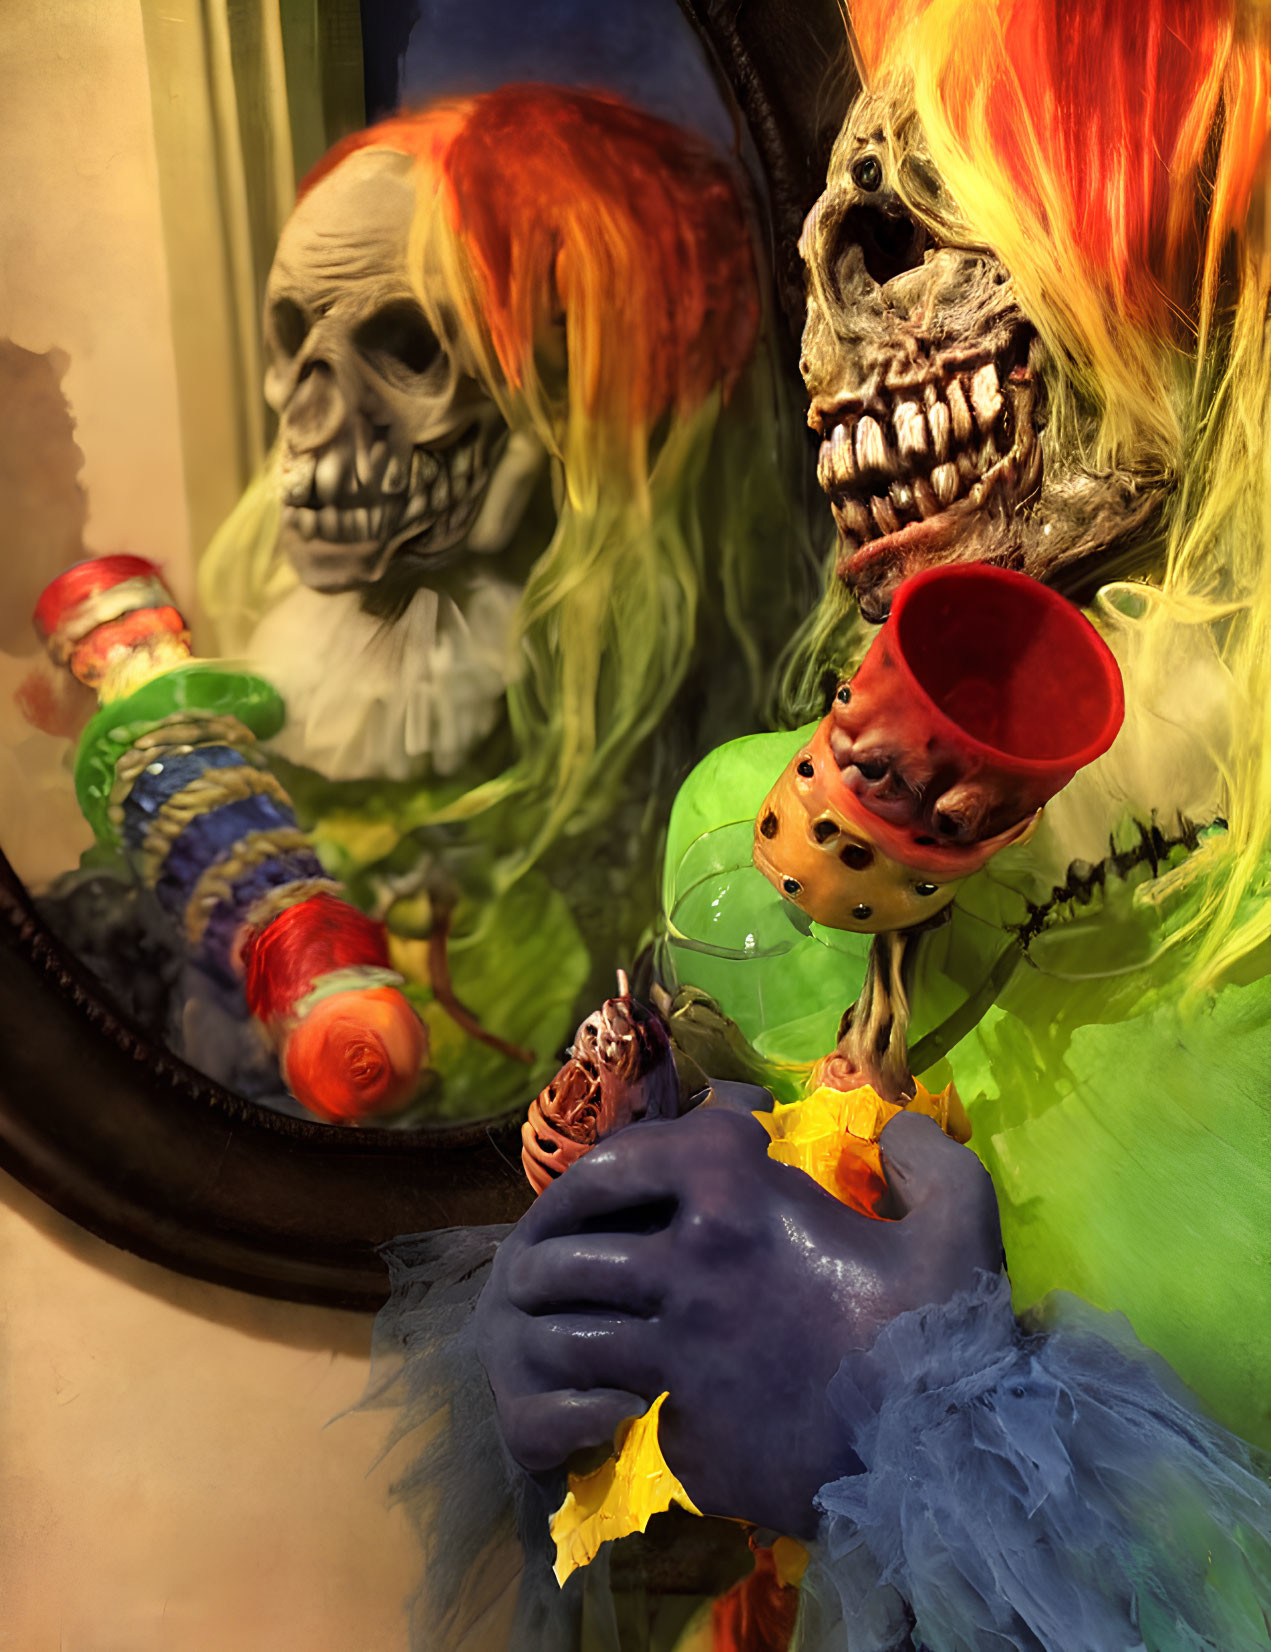 Vibrant eerie display: skeletal figures, candy skewer, bubbling potion, fiery hair,